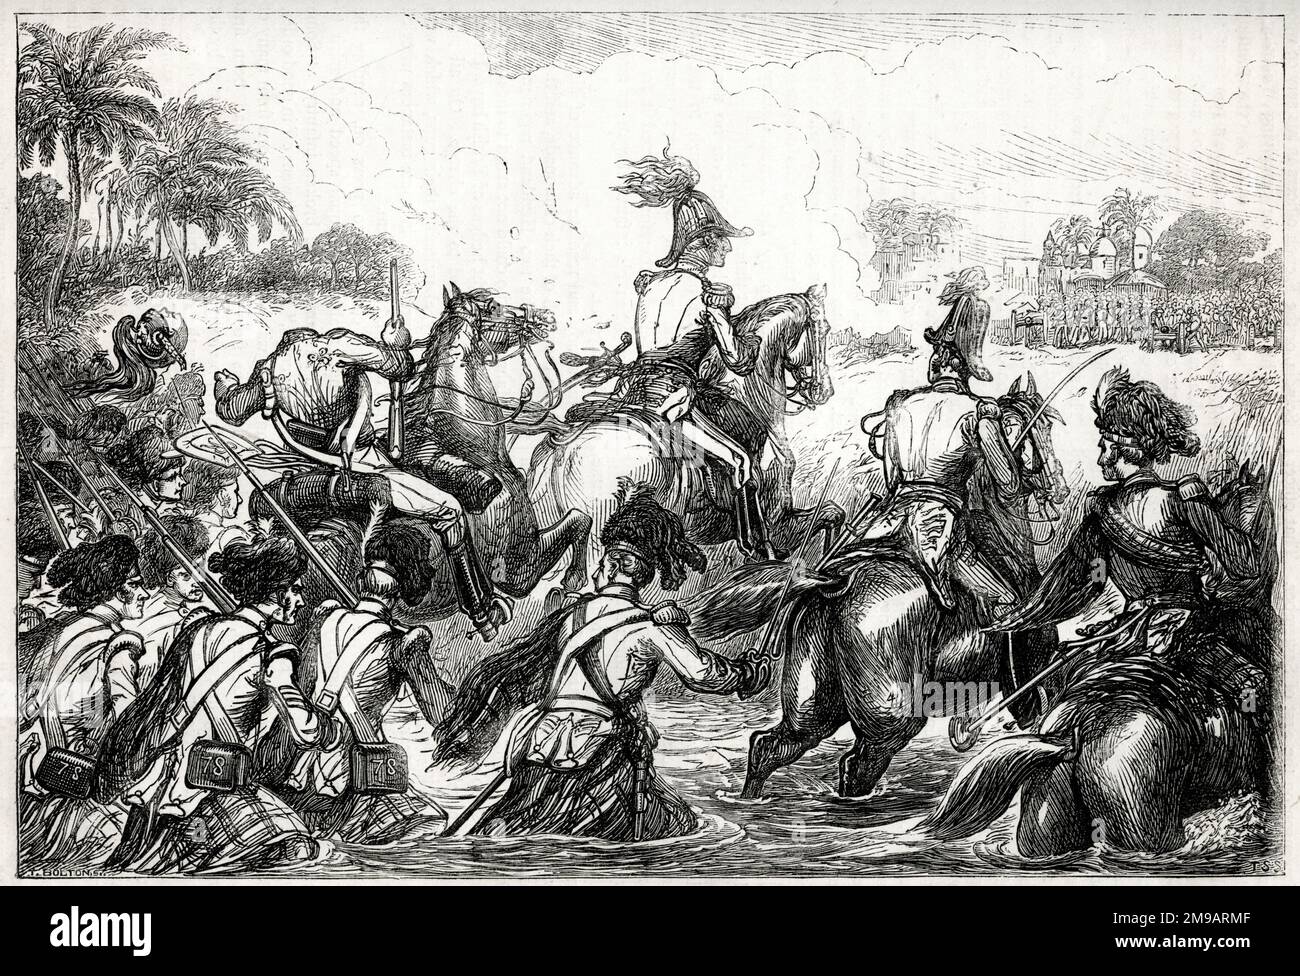 Le général Sir Arthur Wellesley (plus tard duc de Wellington) qui traverse la rivière Kaitna, bataille d'Assaye, dans l'ouest de l'Inde, 23 septembre 1803, entre l'Empire Maratha et la Compagnie britannique de l'Inde orientale, pendant la deuxième guerre anglo-maratha (1803-1805). Aux alentours de 15:00, les Britanniques ont traversé la rive nord de la Kaitna sans opposition, en dehors d'un incendie harcelant éloigné du canon de Maratha, qui était en grande partie inexact mais a réussi à décapiter le dragons de Wellesley de manière ordonnée comme illustré. Banque D'Images